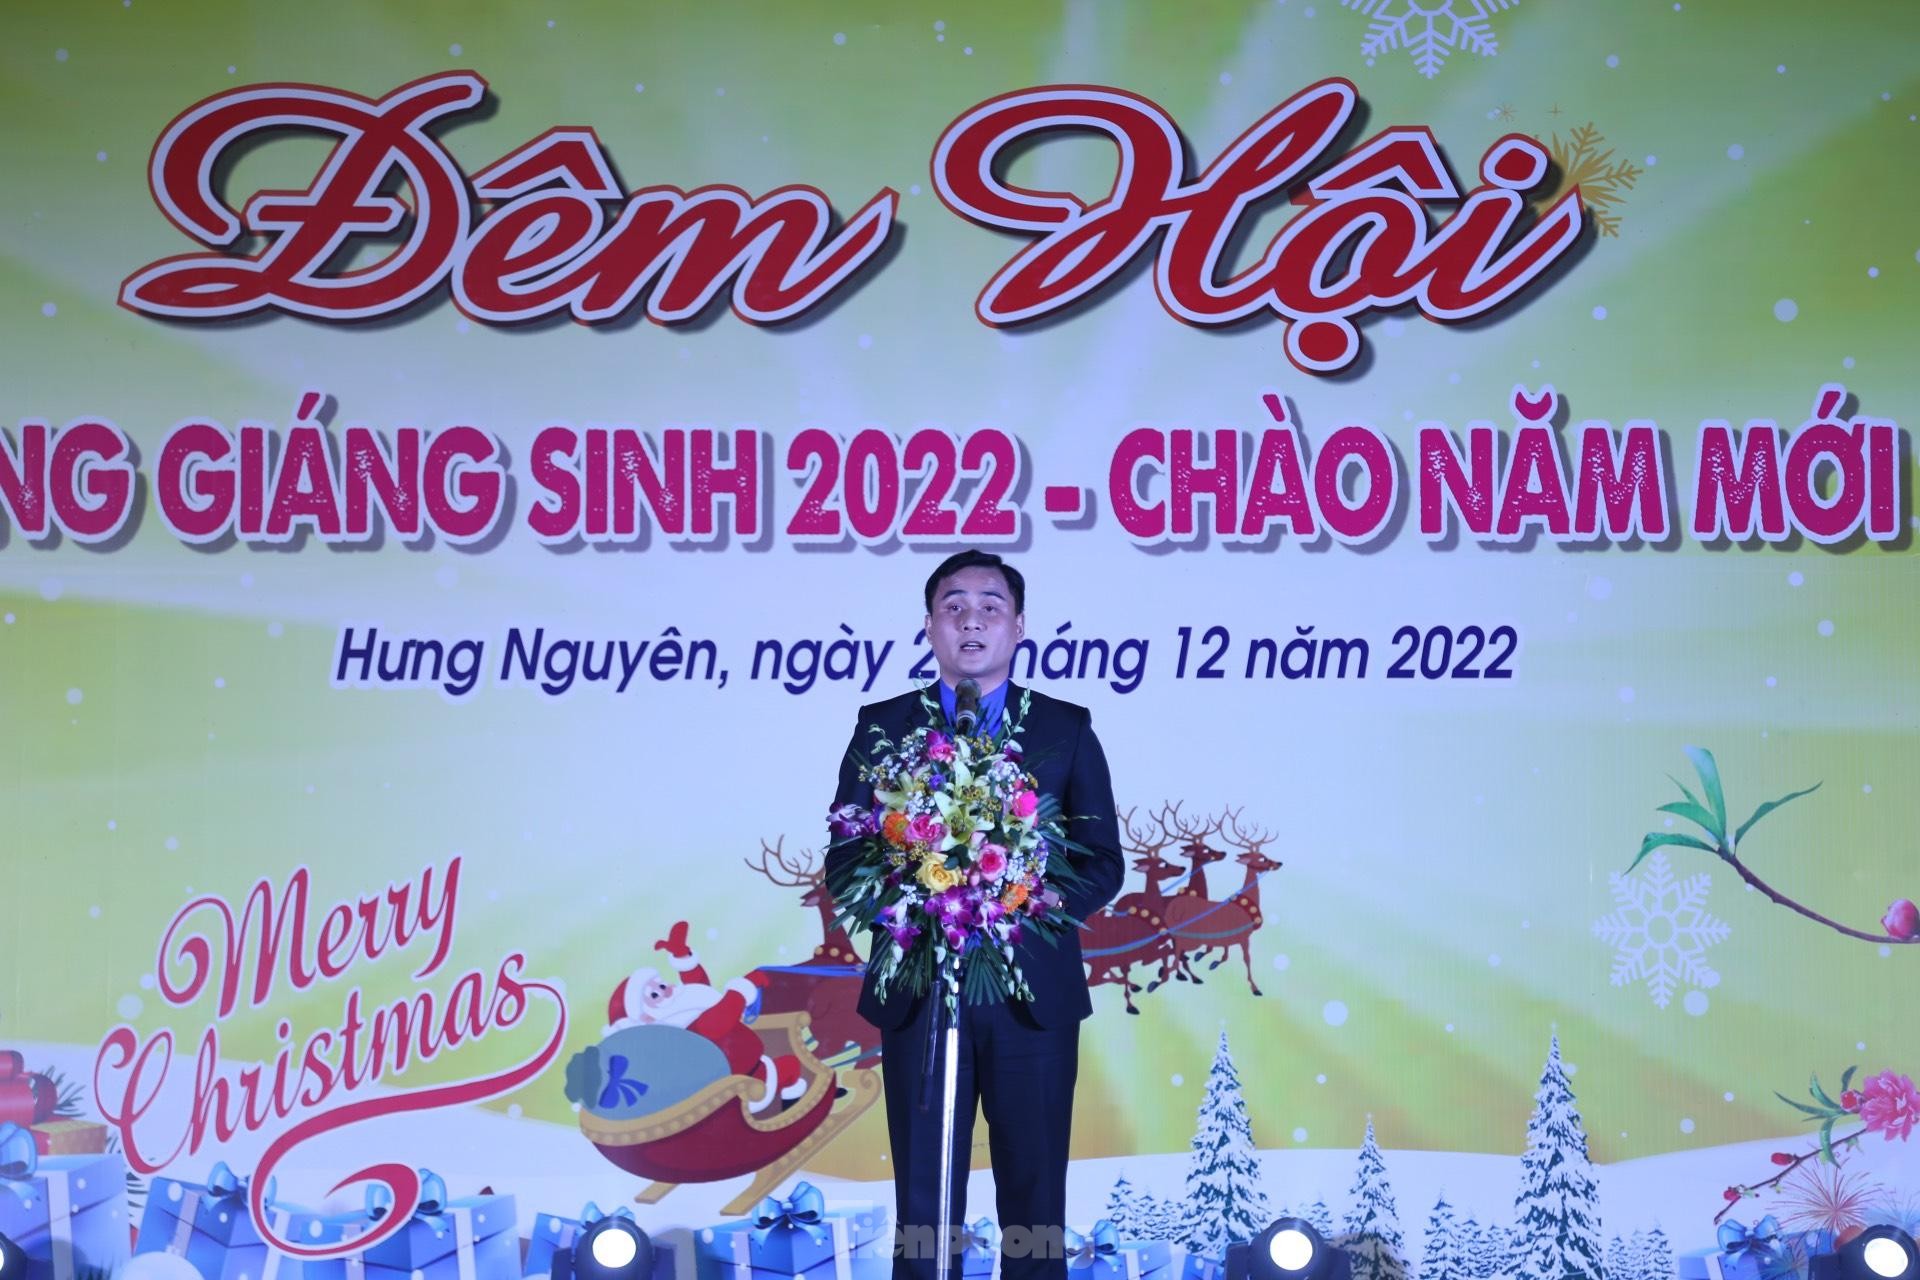 Tỉnh Đoàn, Hội LHTN tỉnh Nghệ An chúc mừng Giáng sinh 2022 ảnh 9